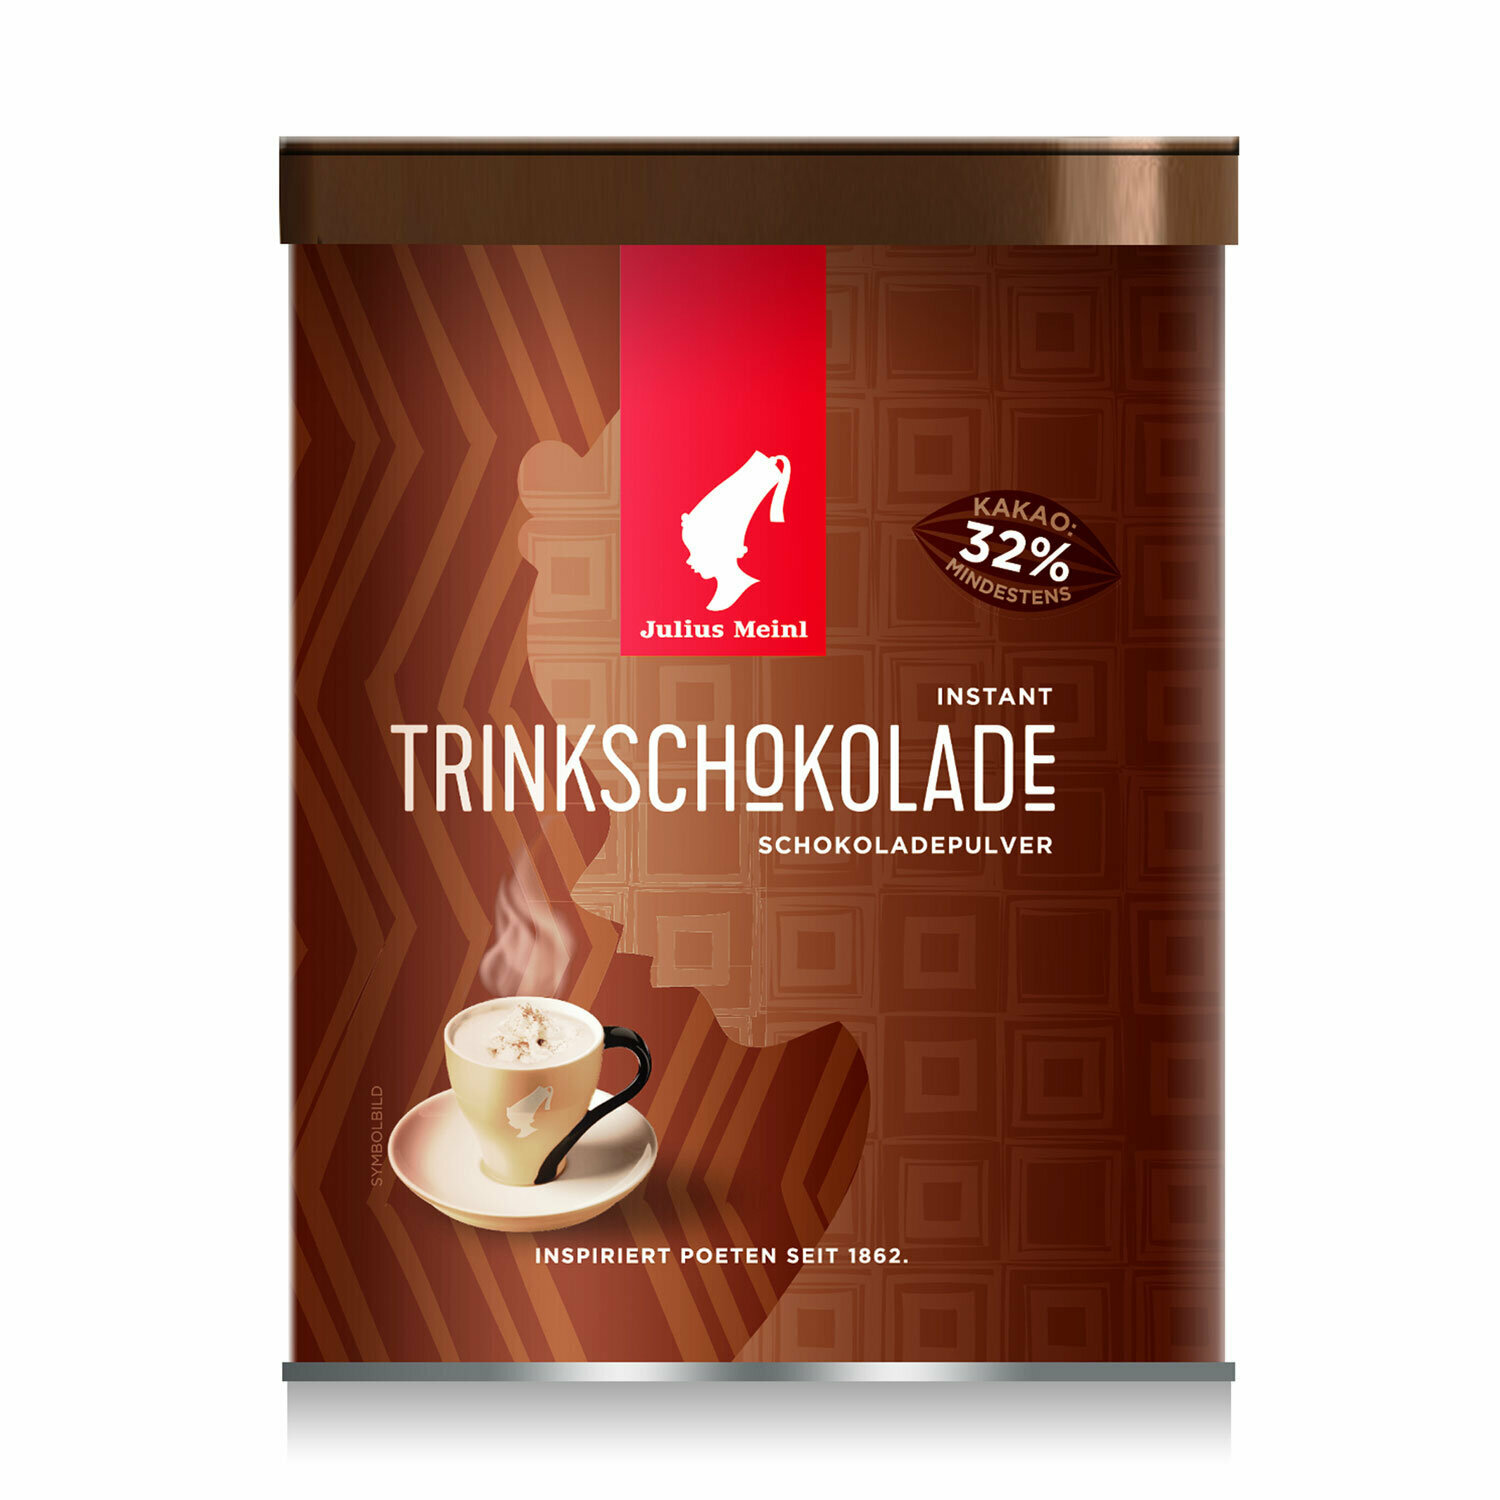 1 Горячий шоколад JULIUS MEINL «Trinkschokolade», банка 300 г, австрия - фотография № 2